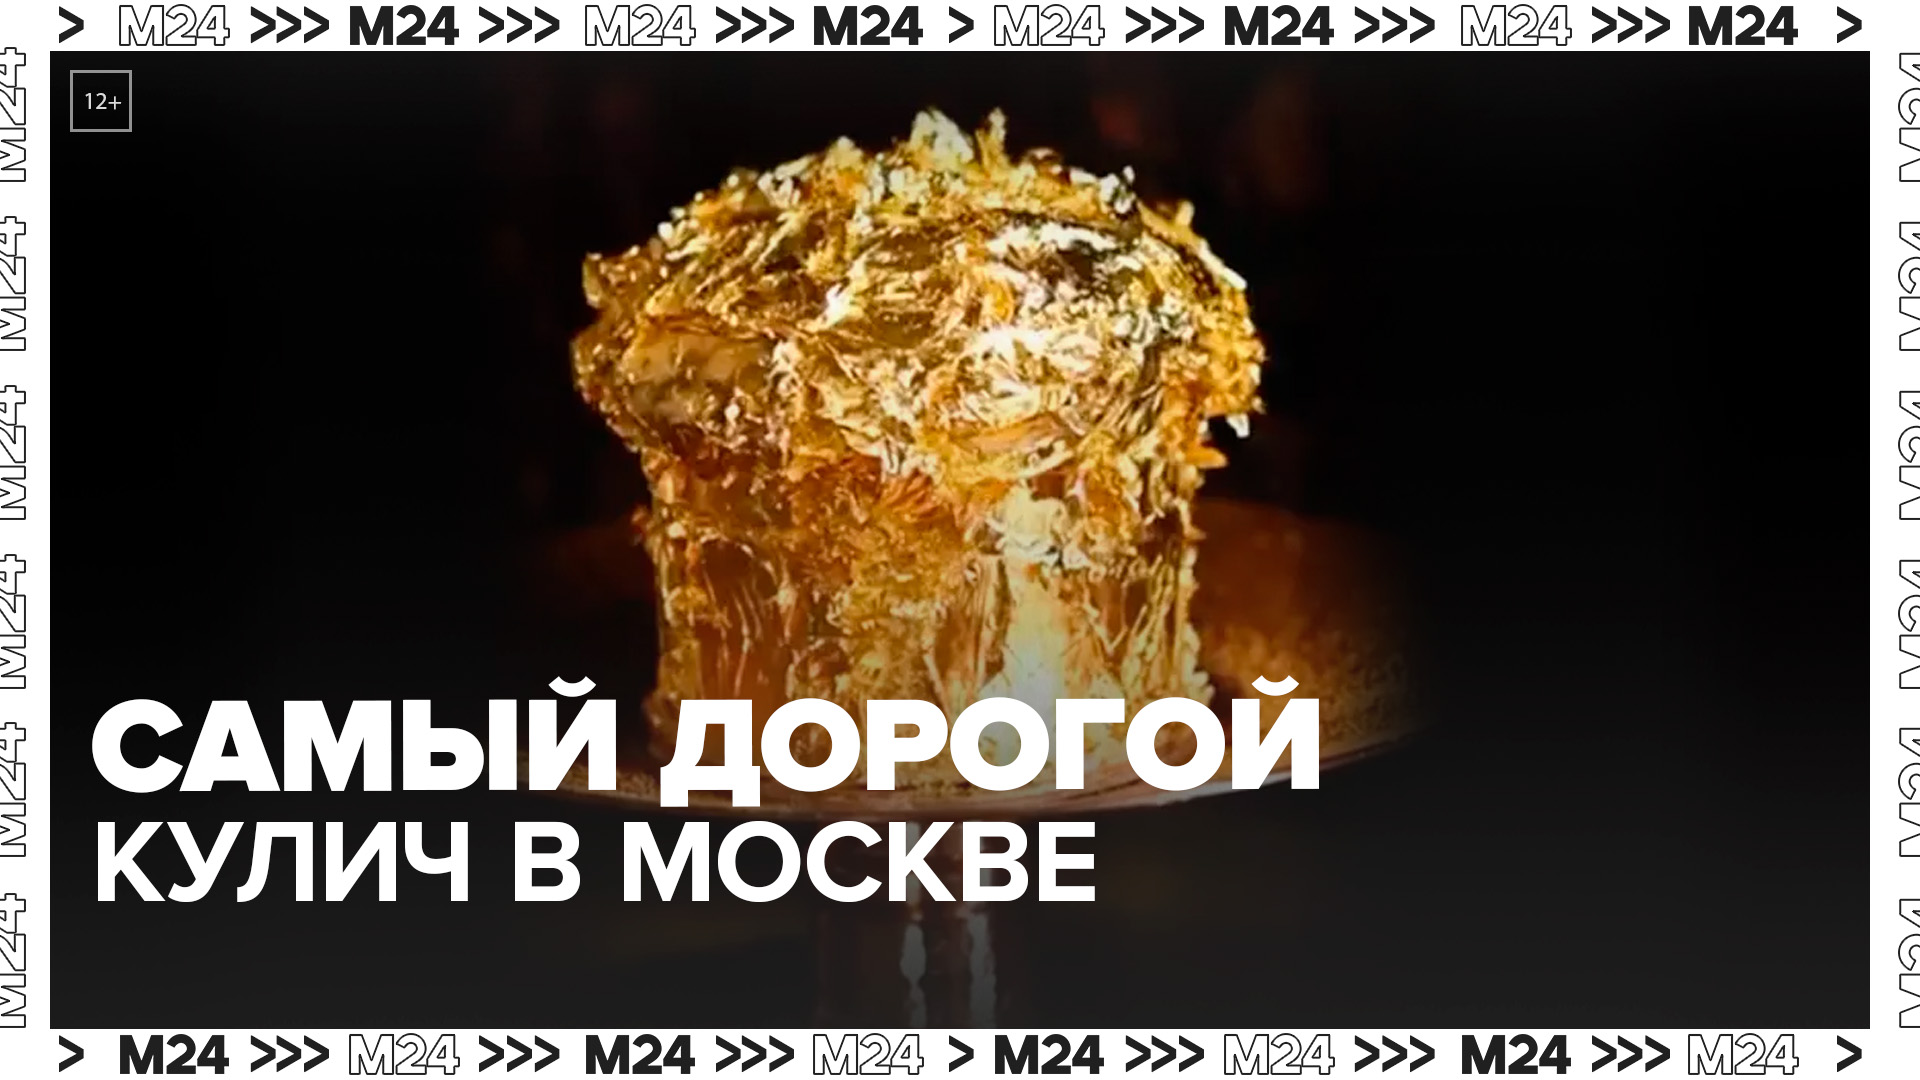 "Актуальный репортаж": названа цена самого дорога кулича в Москве - Москва 24